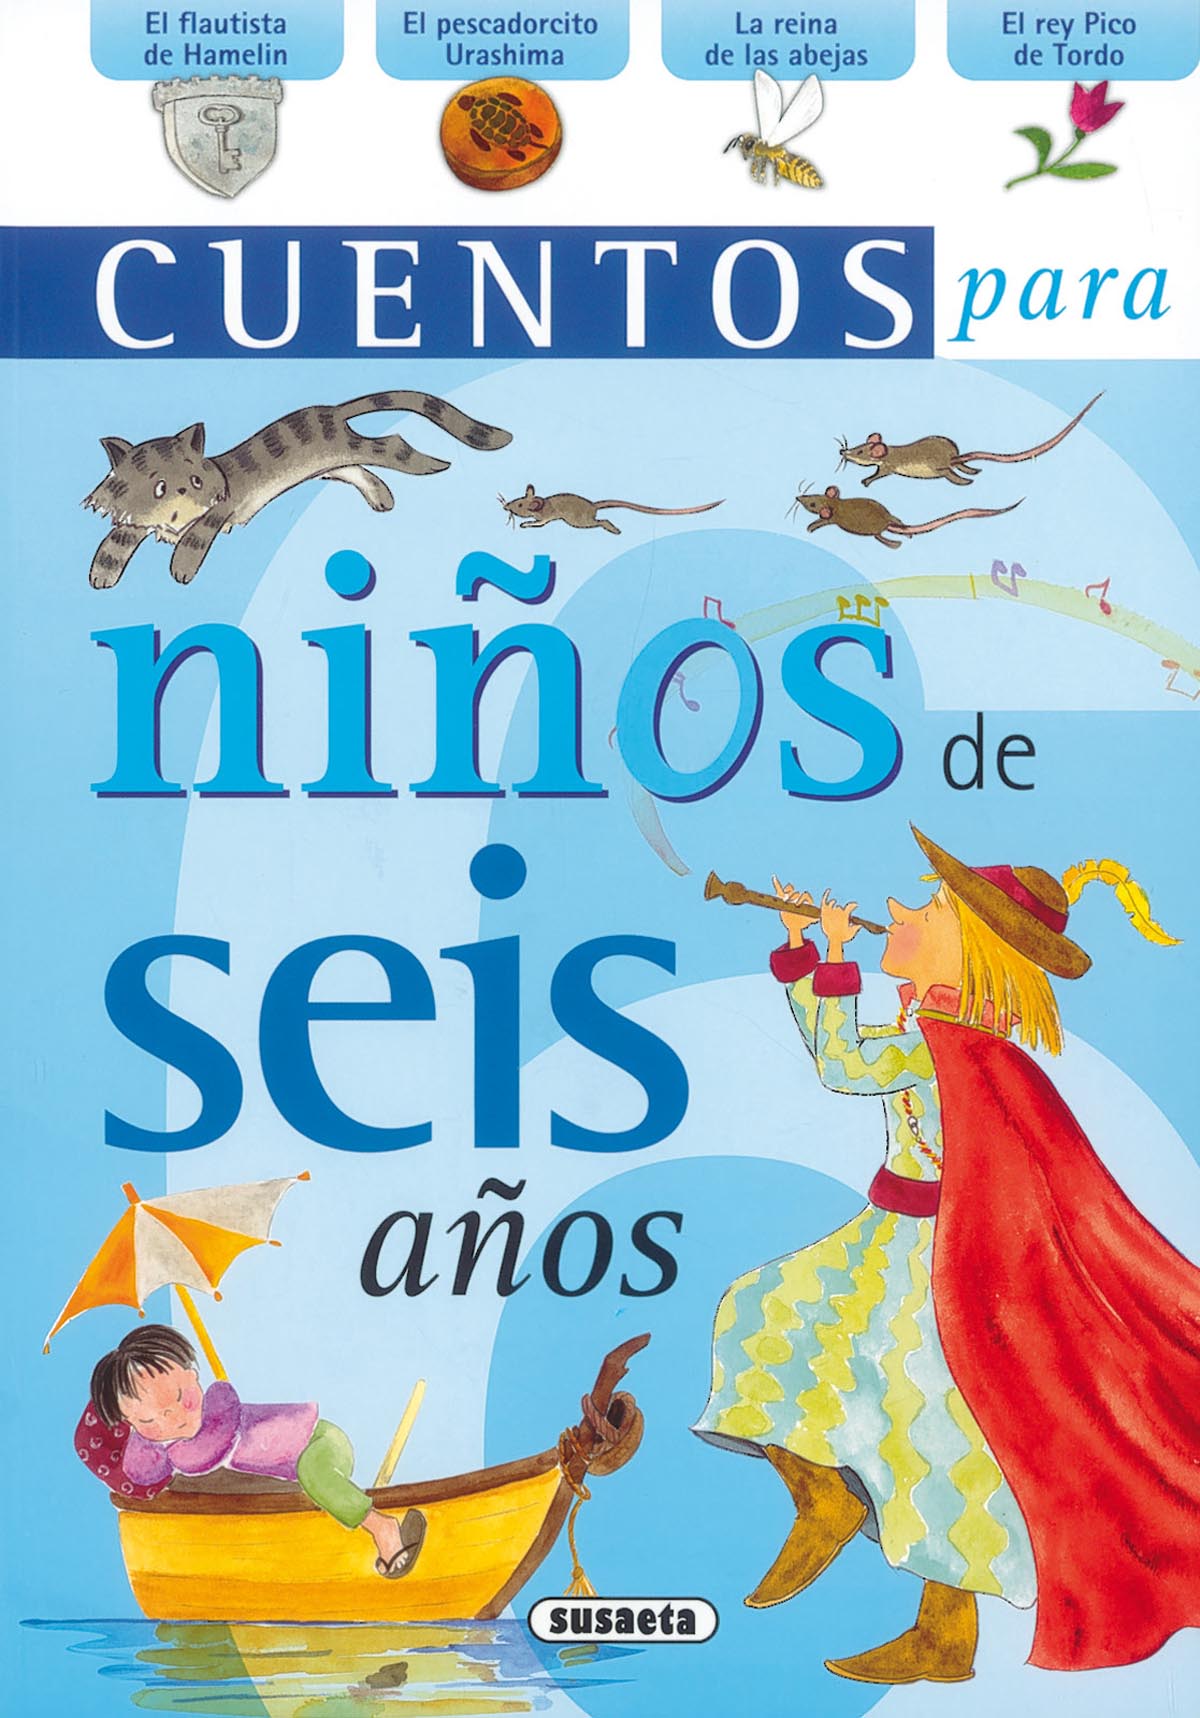 Cuentos para niños de seis años - Biblioteca Infantil y Juvenil República  Dominicana